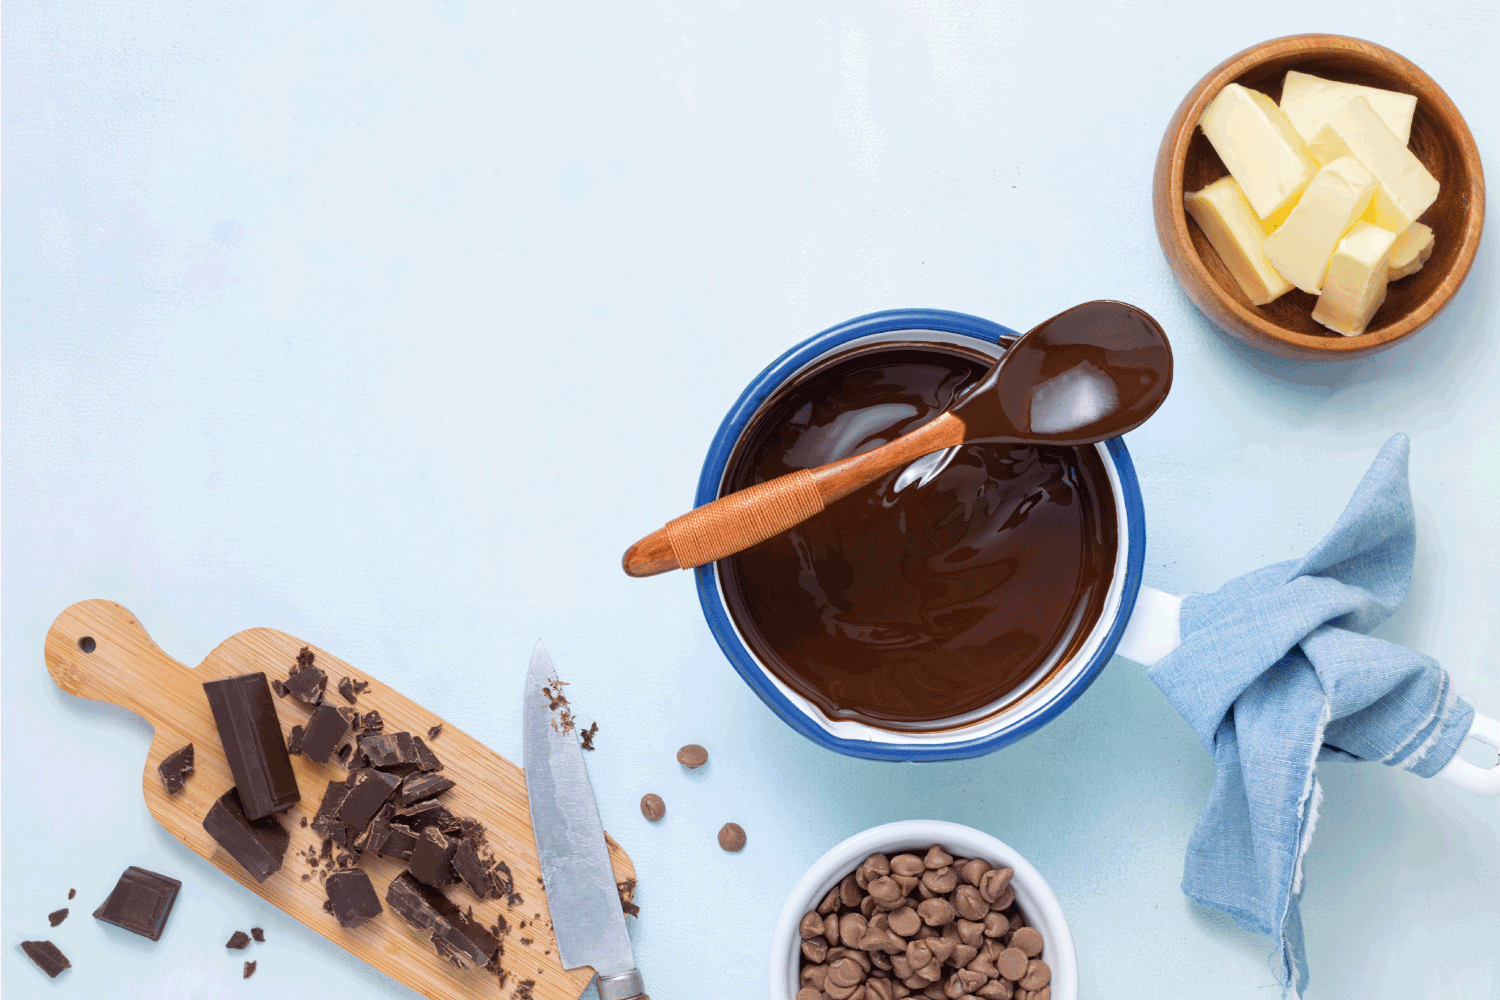 熔融巧克力用不同类型的巧克力作面团制作配方巧克力甘纳许、蛋糕、布朗尼、松饼、纸杯蛋糕的配料